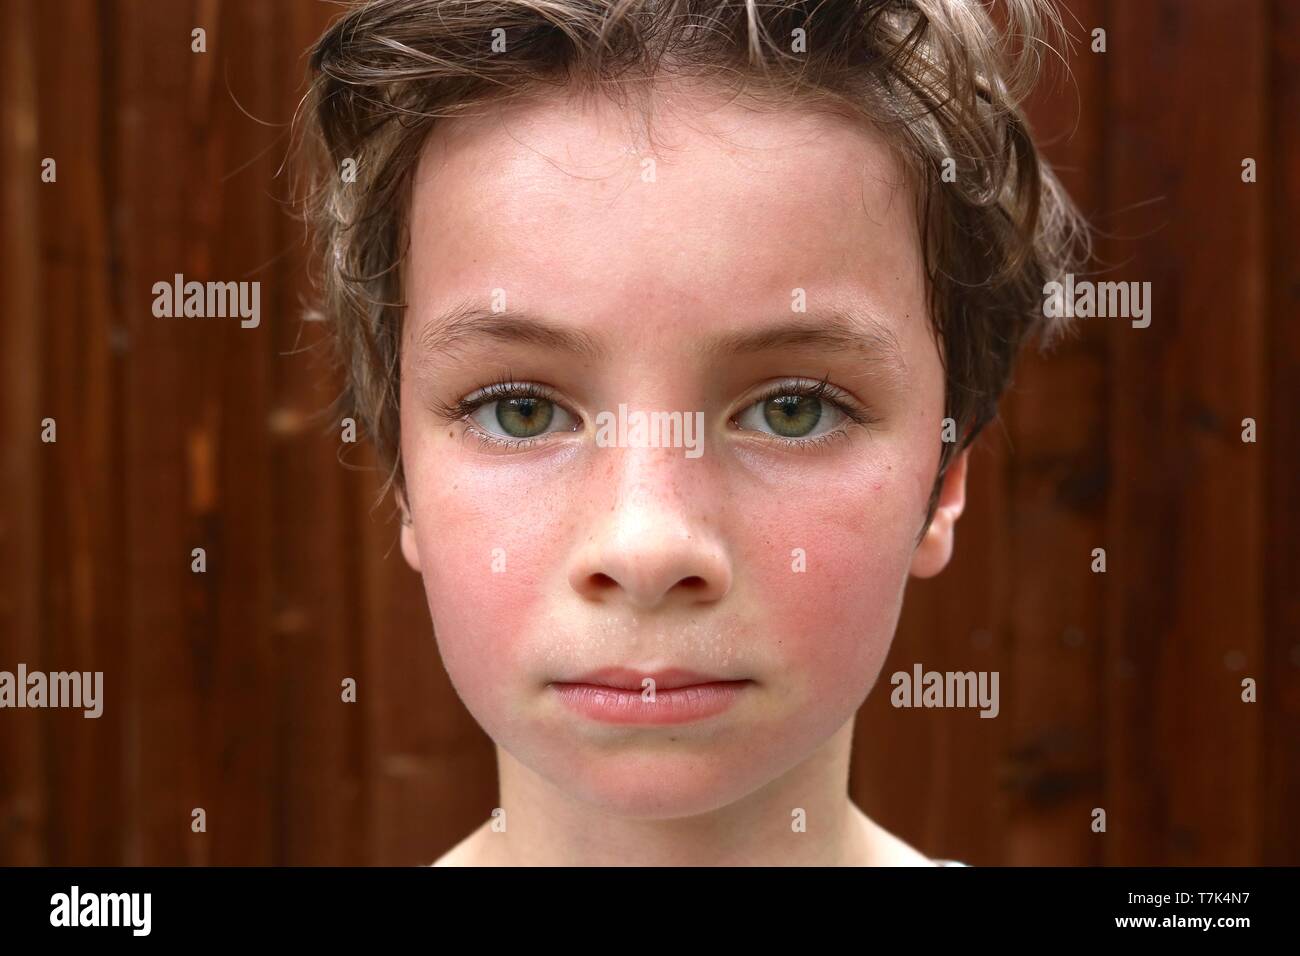 Porträt einer heiß und verschwitzt Kind mit großen grünen Augen und kurze braune Haare Stockfoto